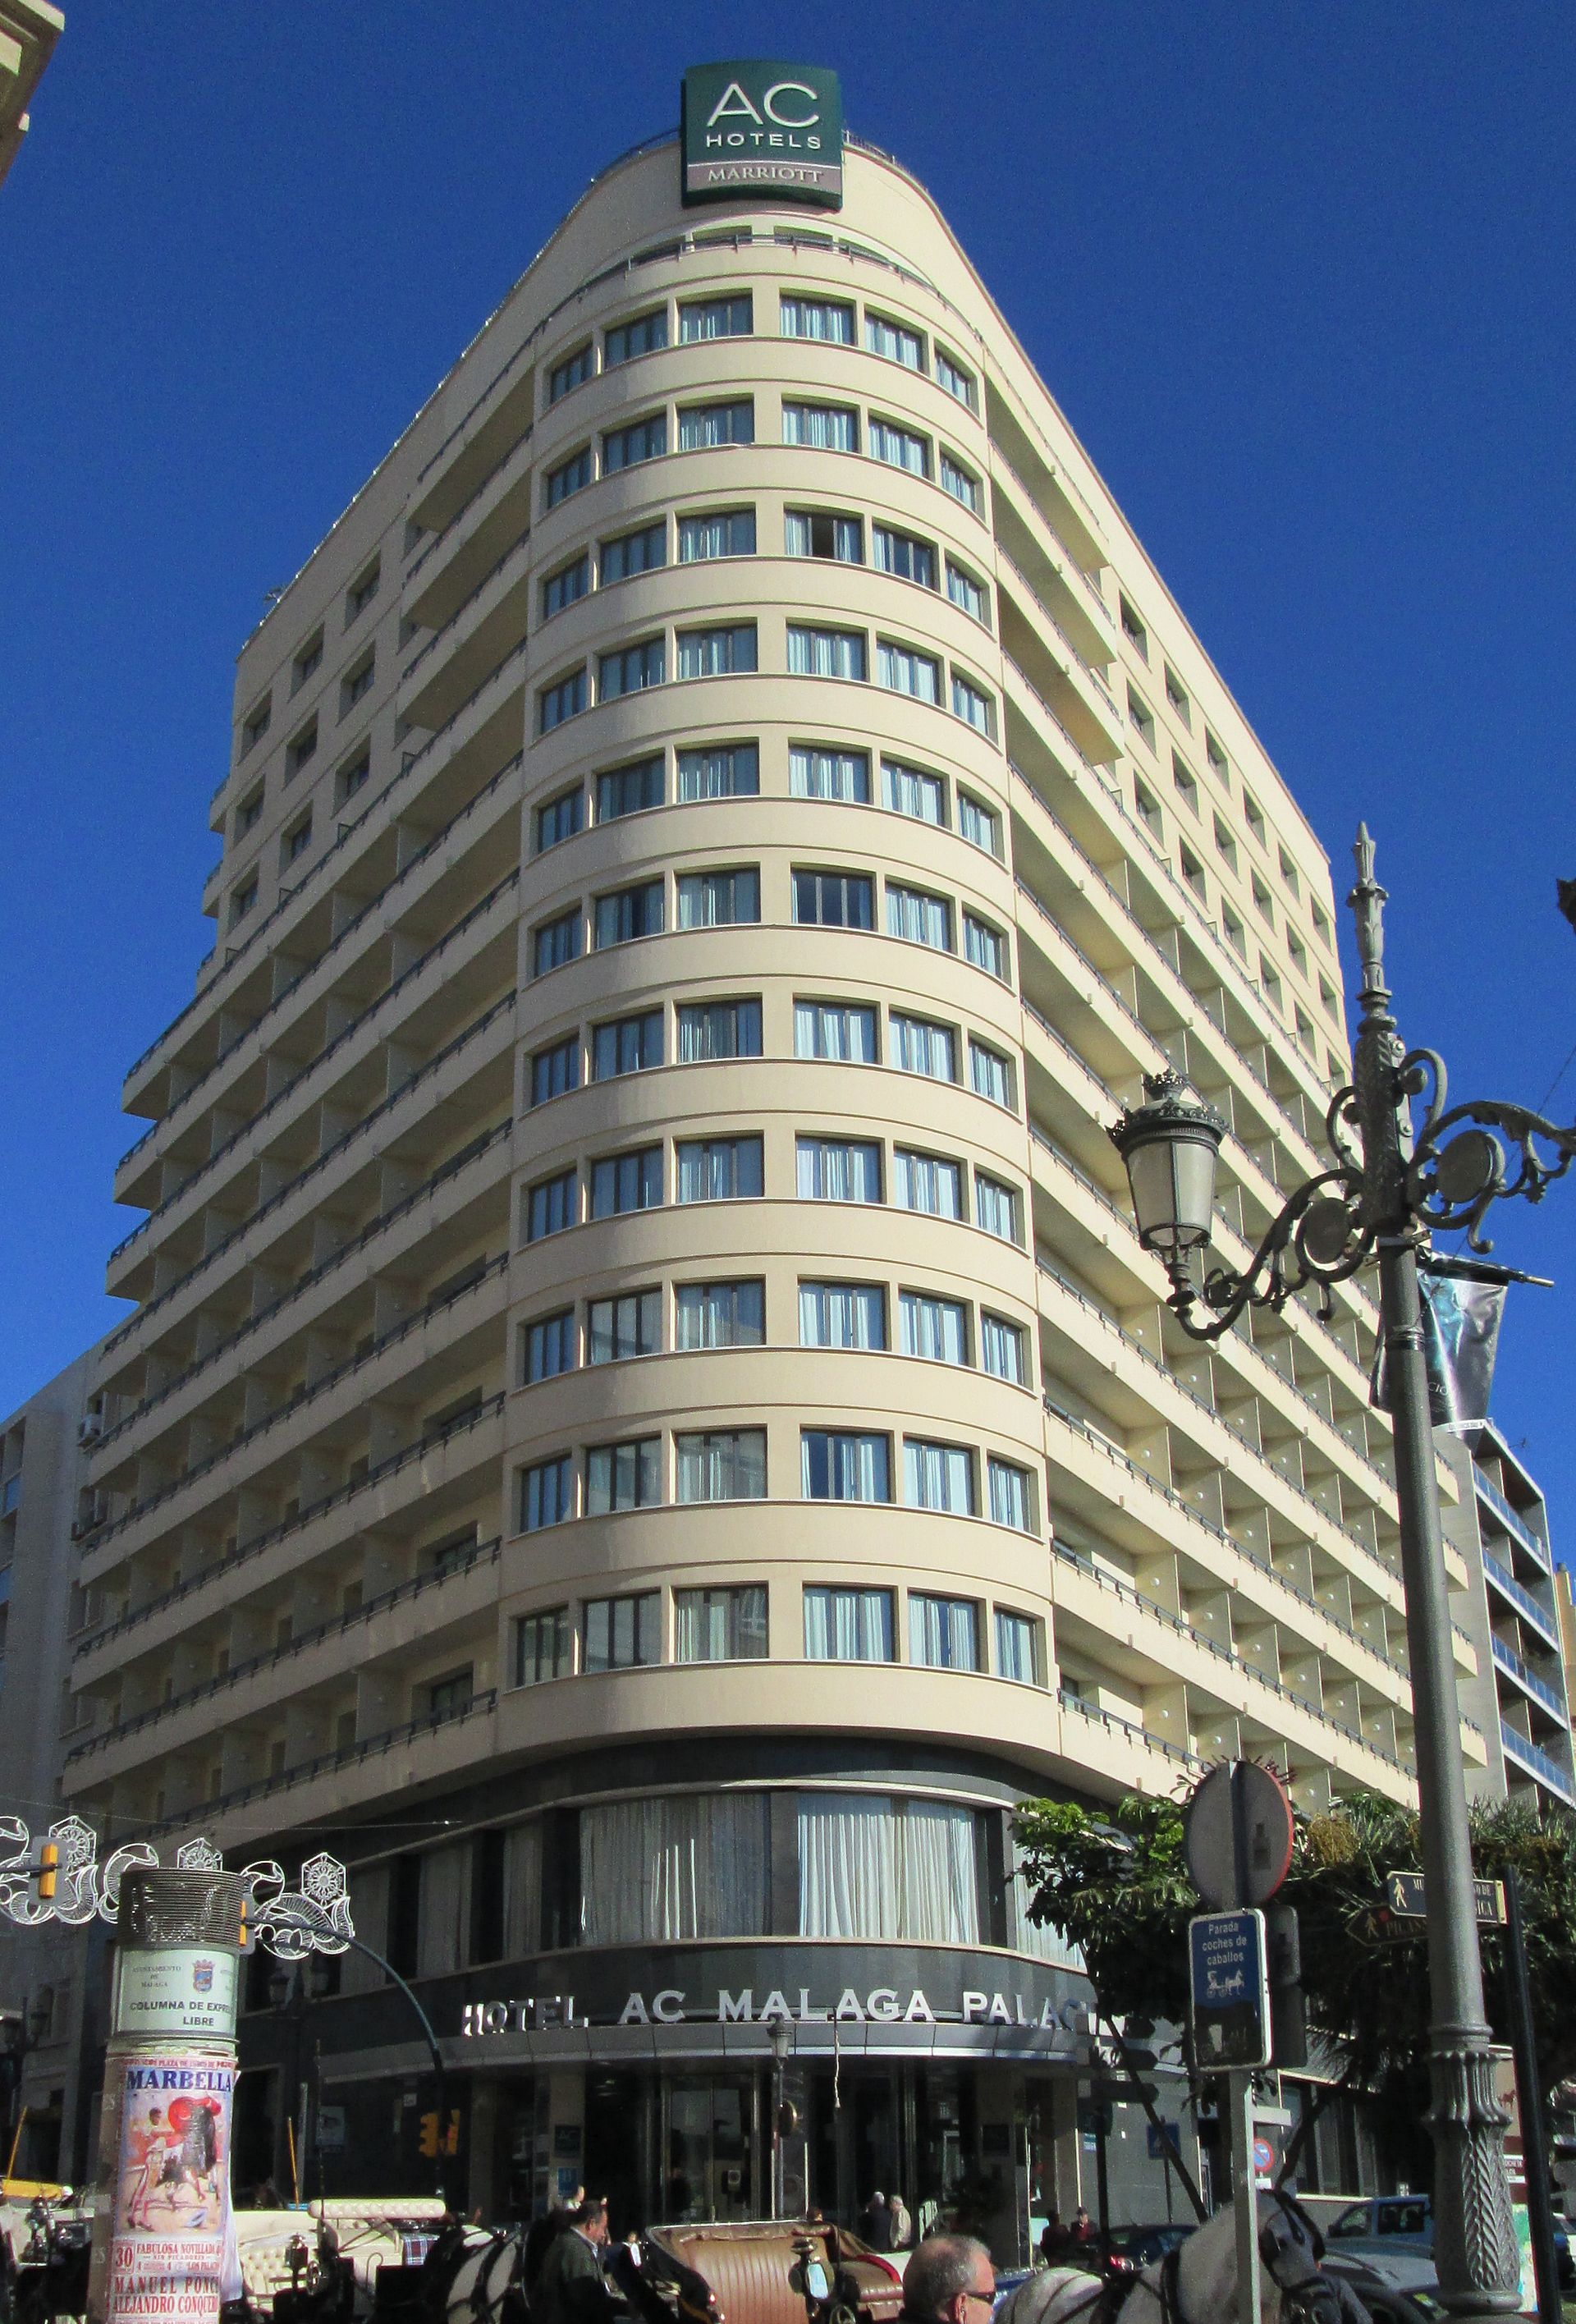 Malaga Casino